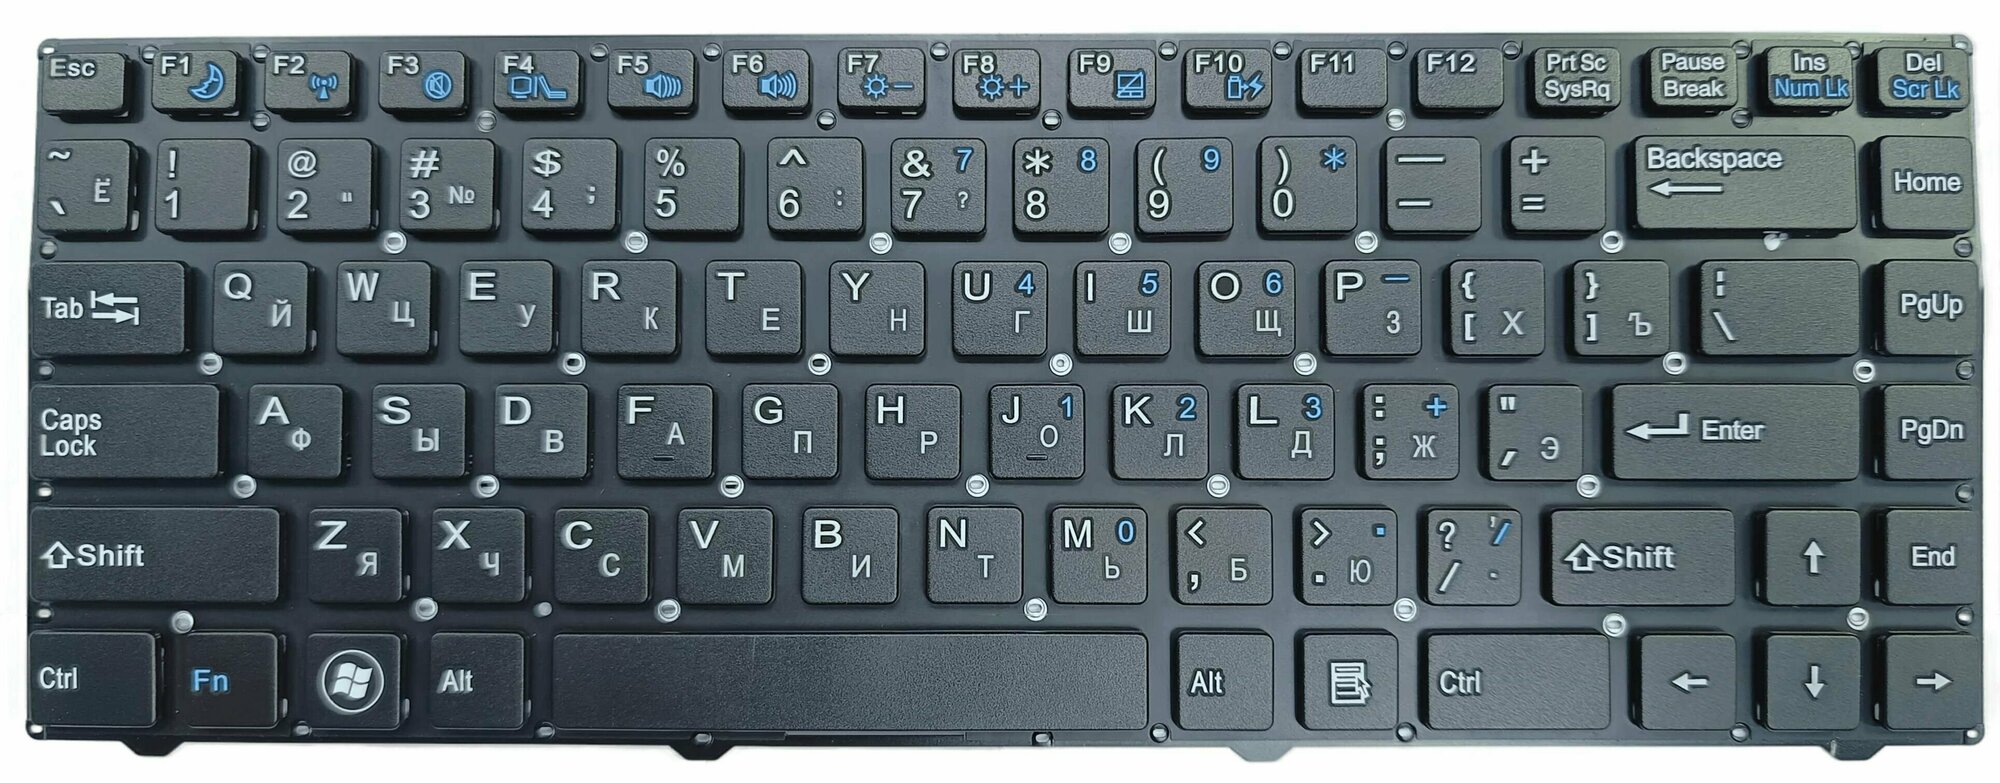 Клавиатура для ноутбука DNS 0150931 Pegatron B14Y Clevo W740 W840 Series черная без рамки больш